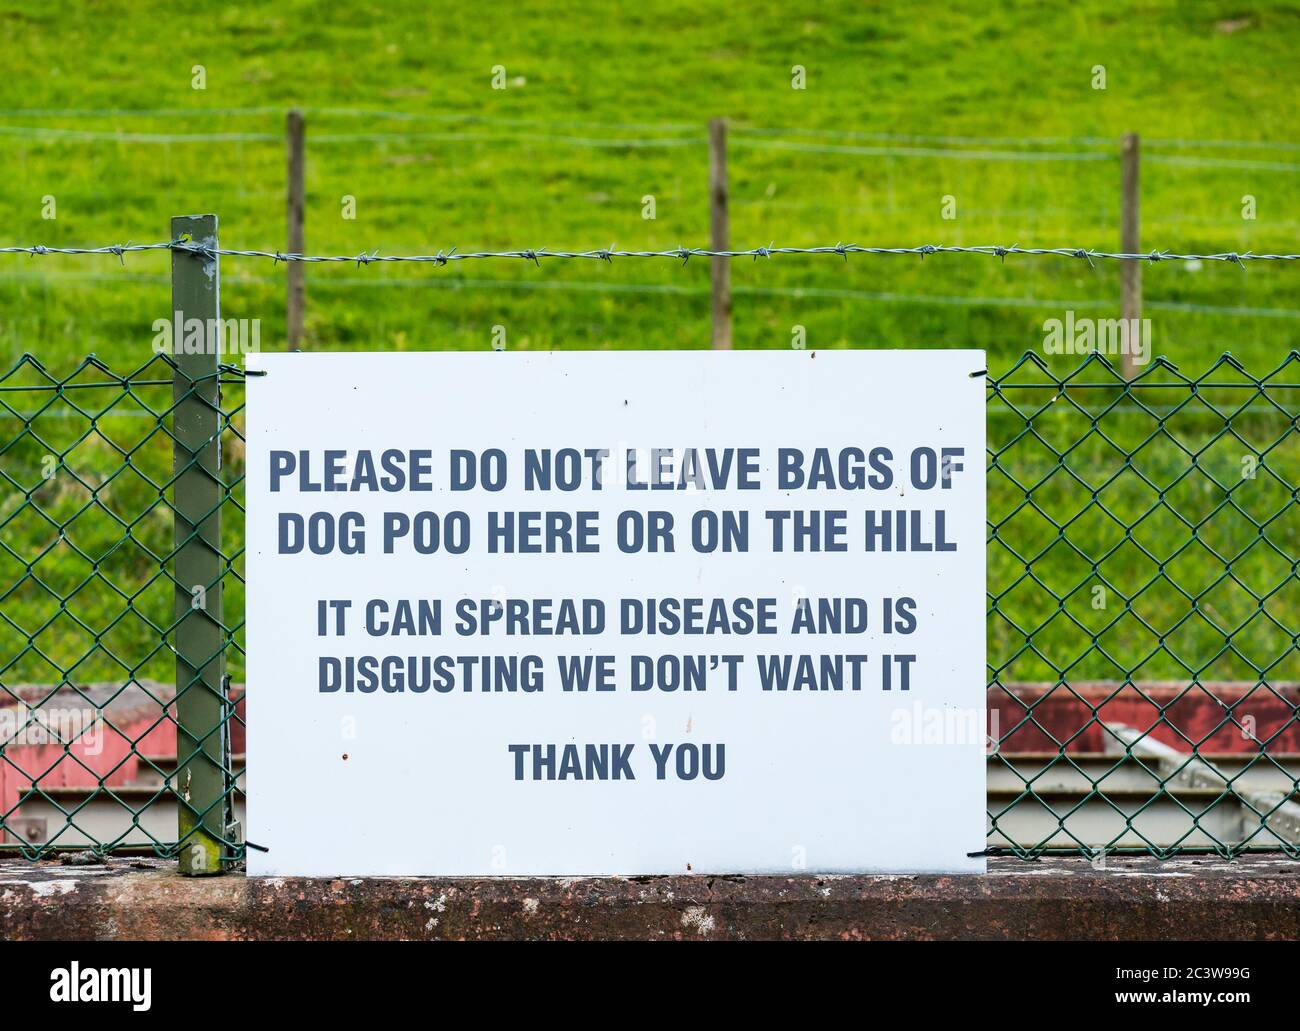 Avviso sulla recinzione per non lasciare sacchi di cane poo, Lammermuir Hills, East Lothian, Scozia, Regno Unito Foto Stock